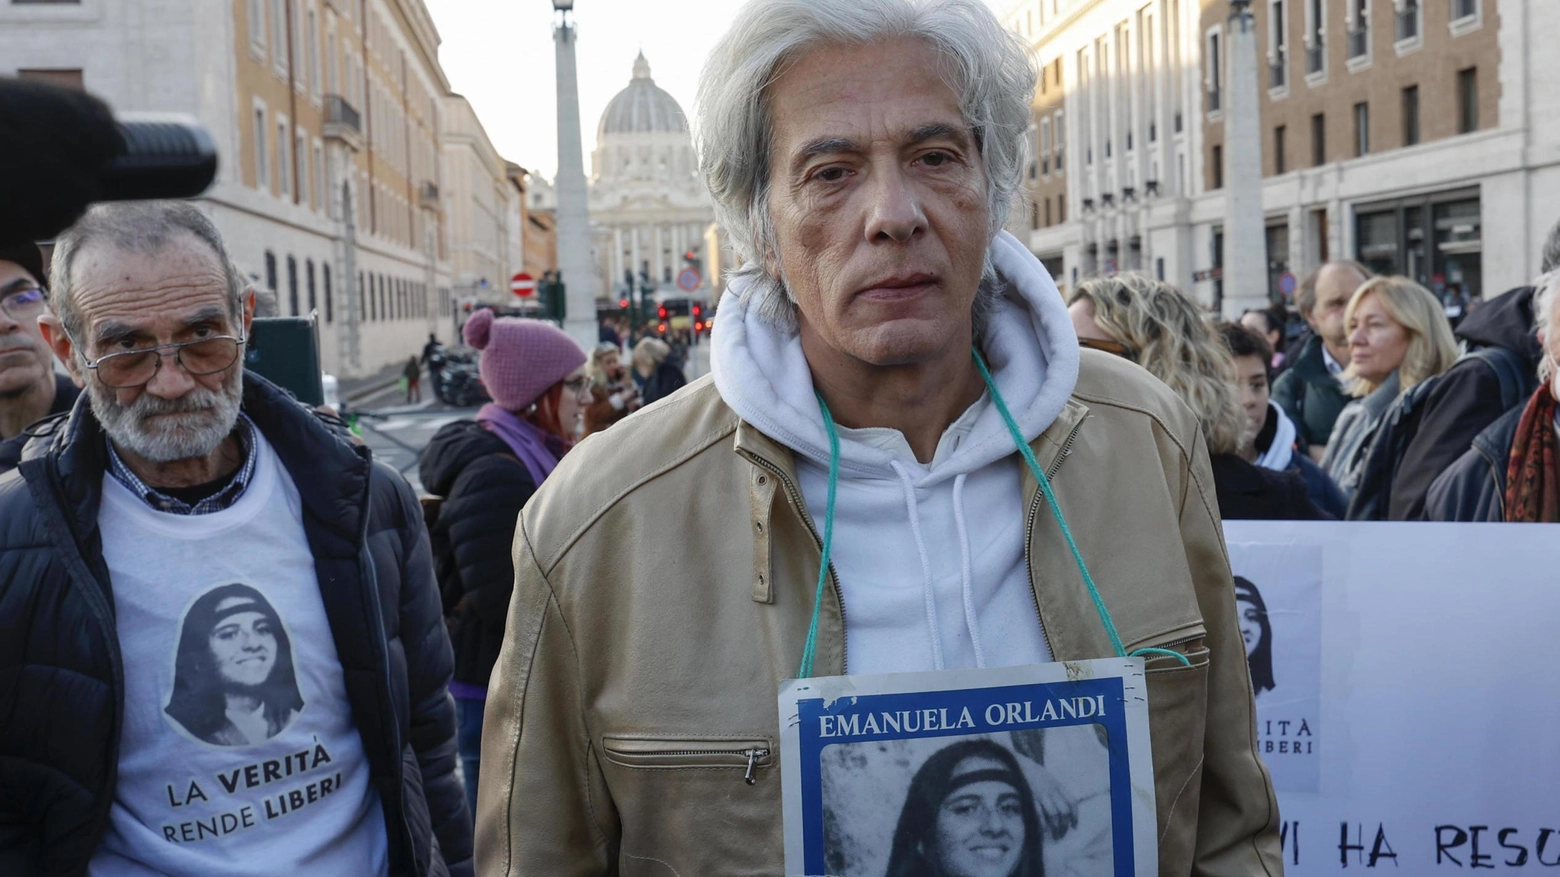 Da 40 anni incalza il Vaticano   Mille appelli senza risposta  La lotta disperata di Orlandi